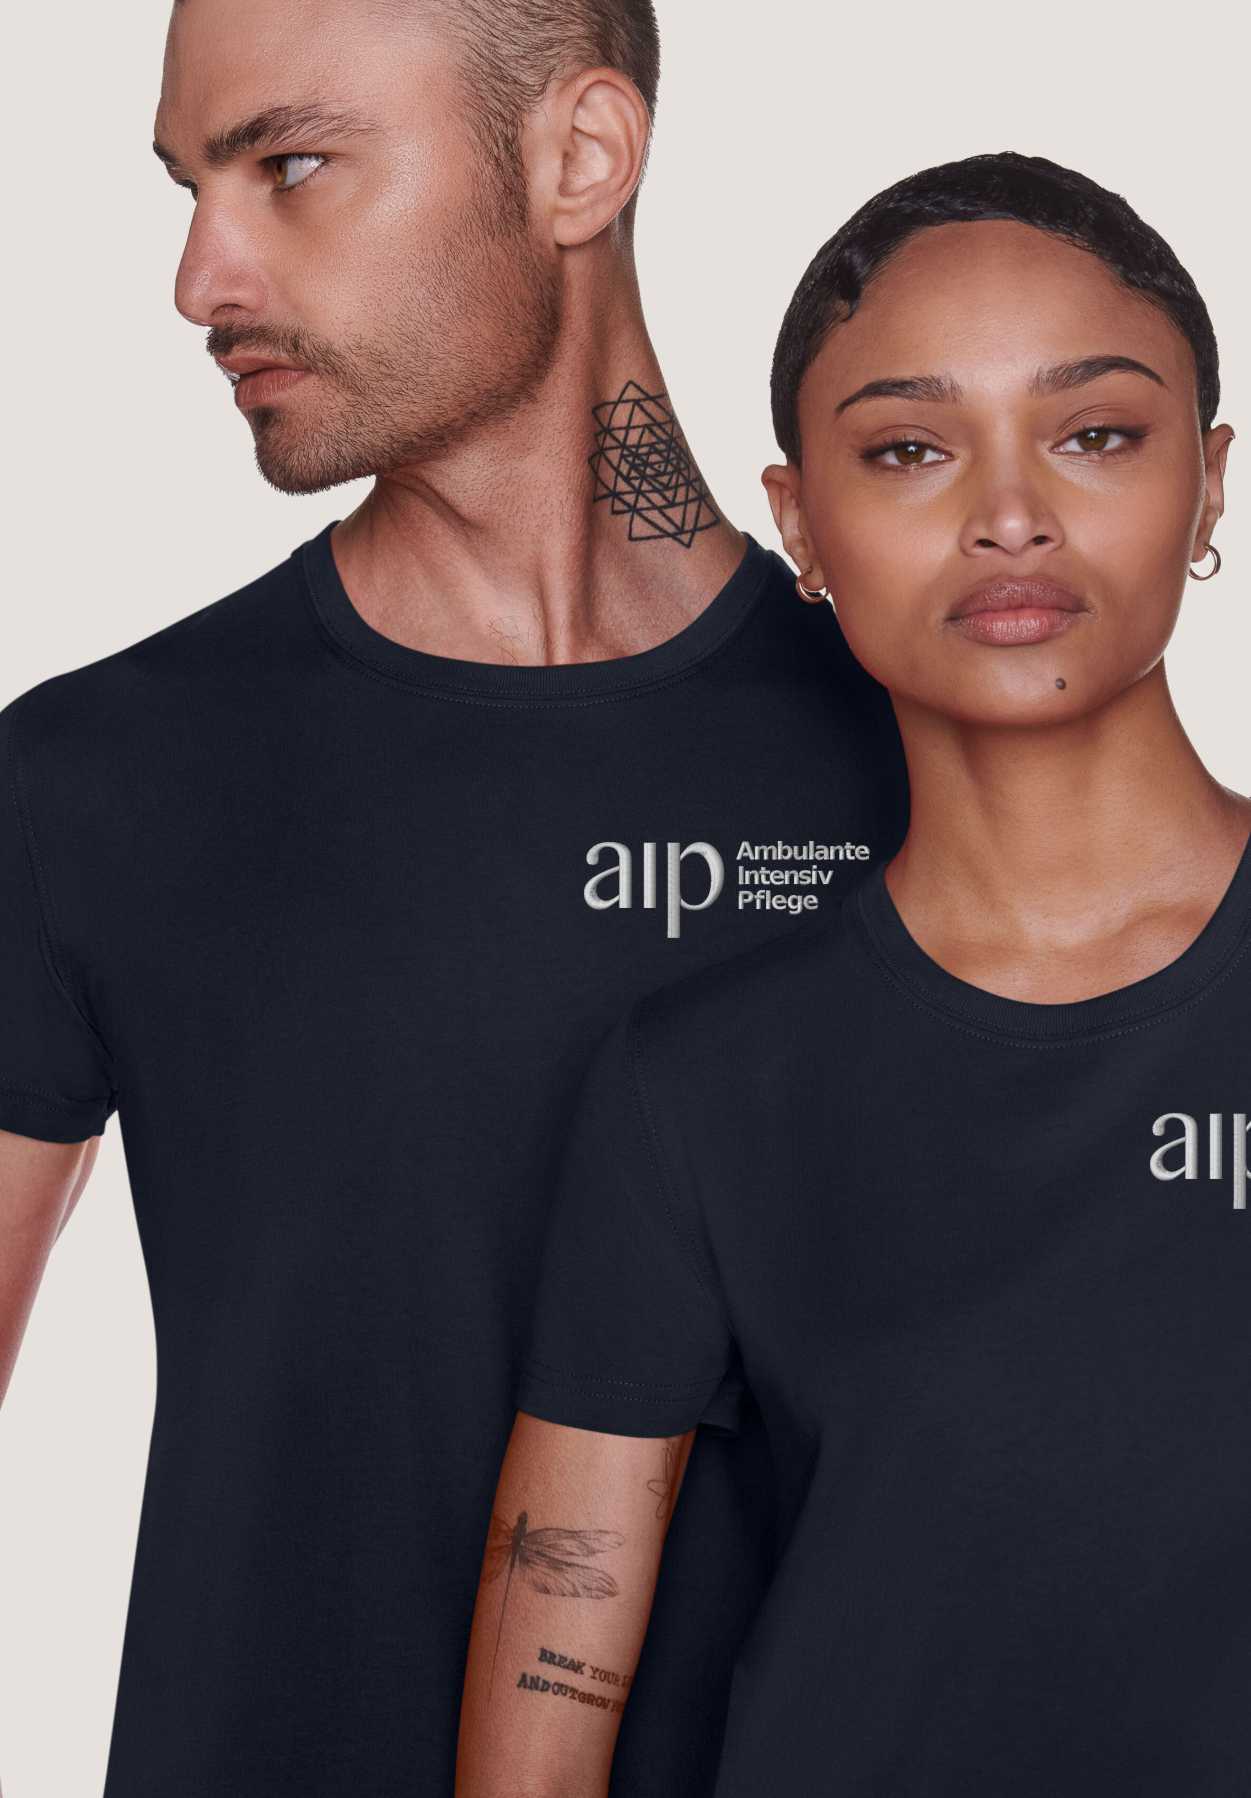 Frau und Mann im T-Shirt mit Logostick